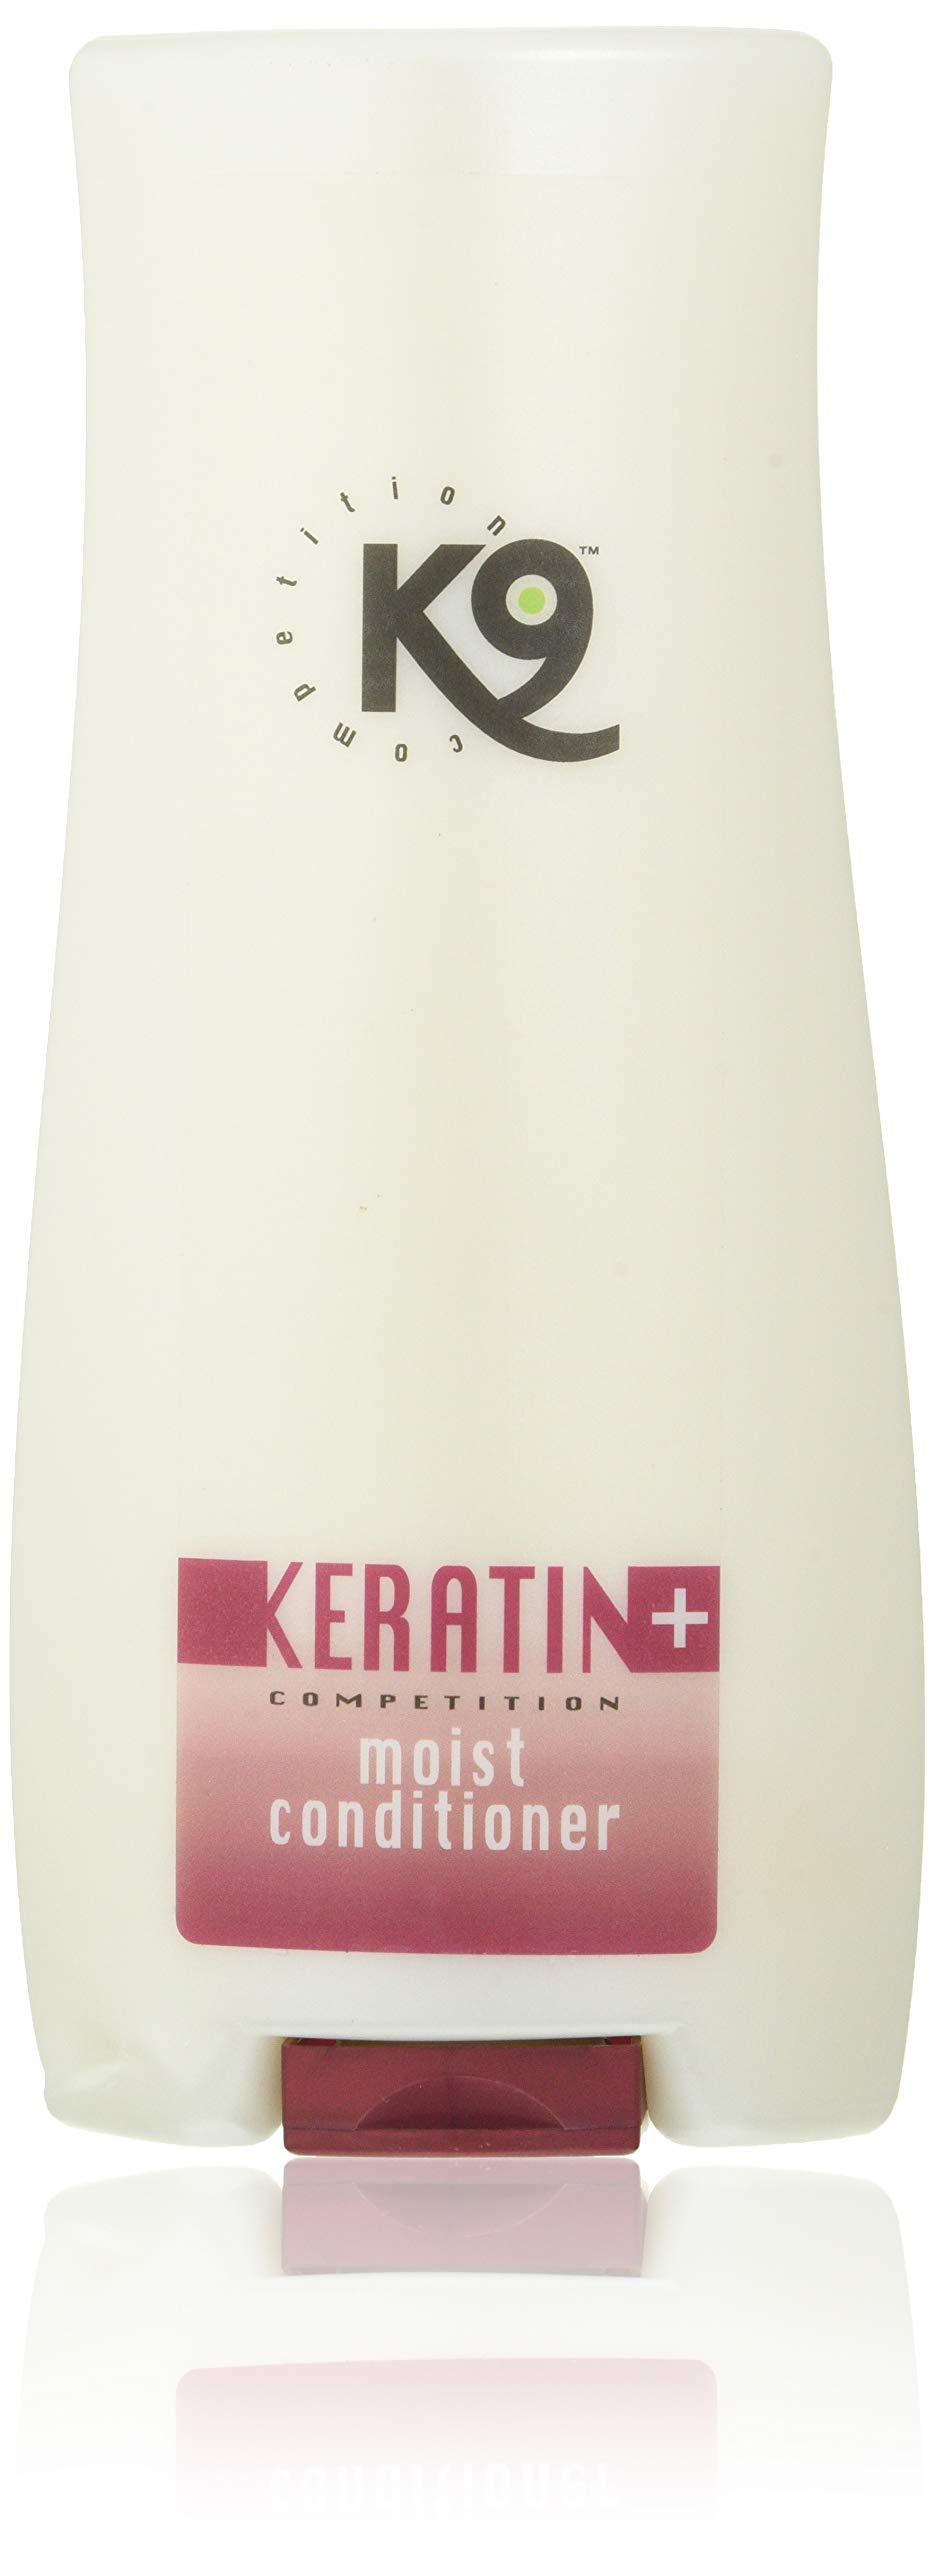 K9 Dog + Moisture apres-shampoing Keratin 300 ml - PawsPlanet Australia